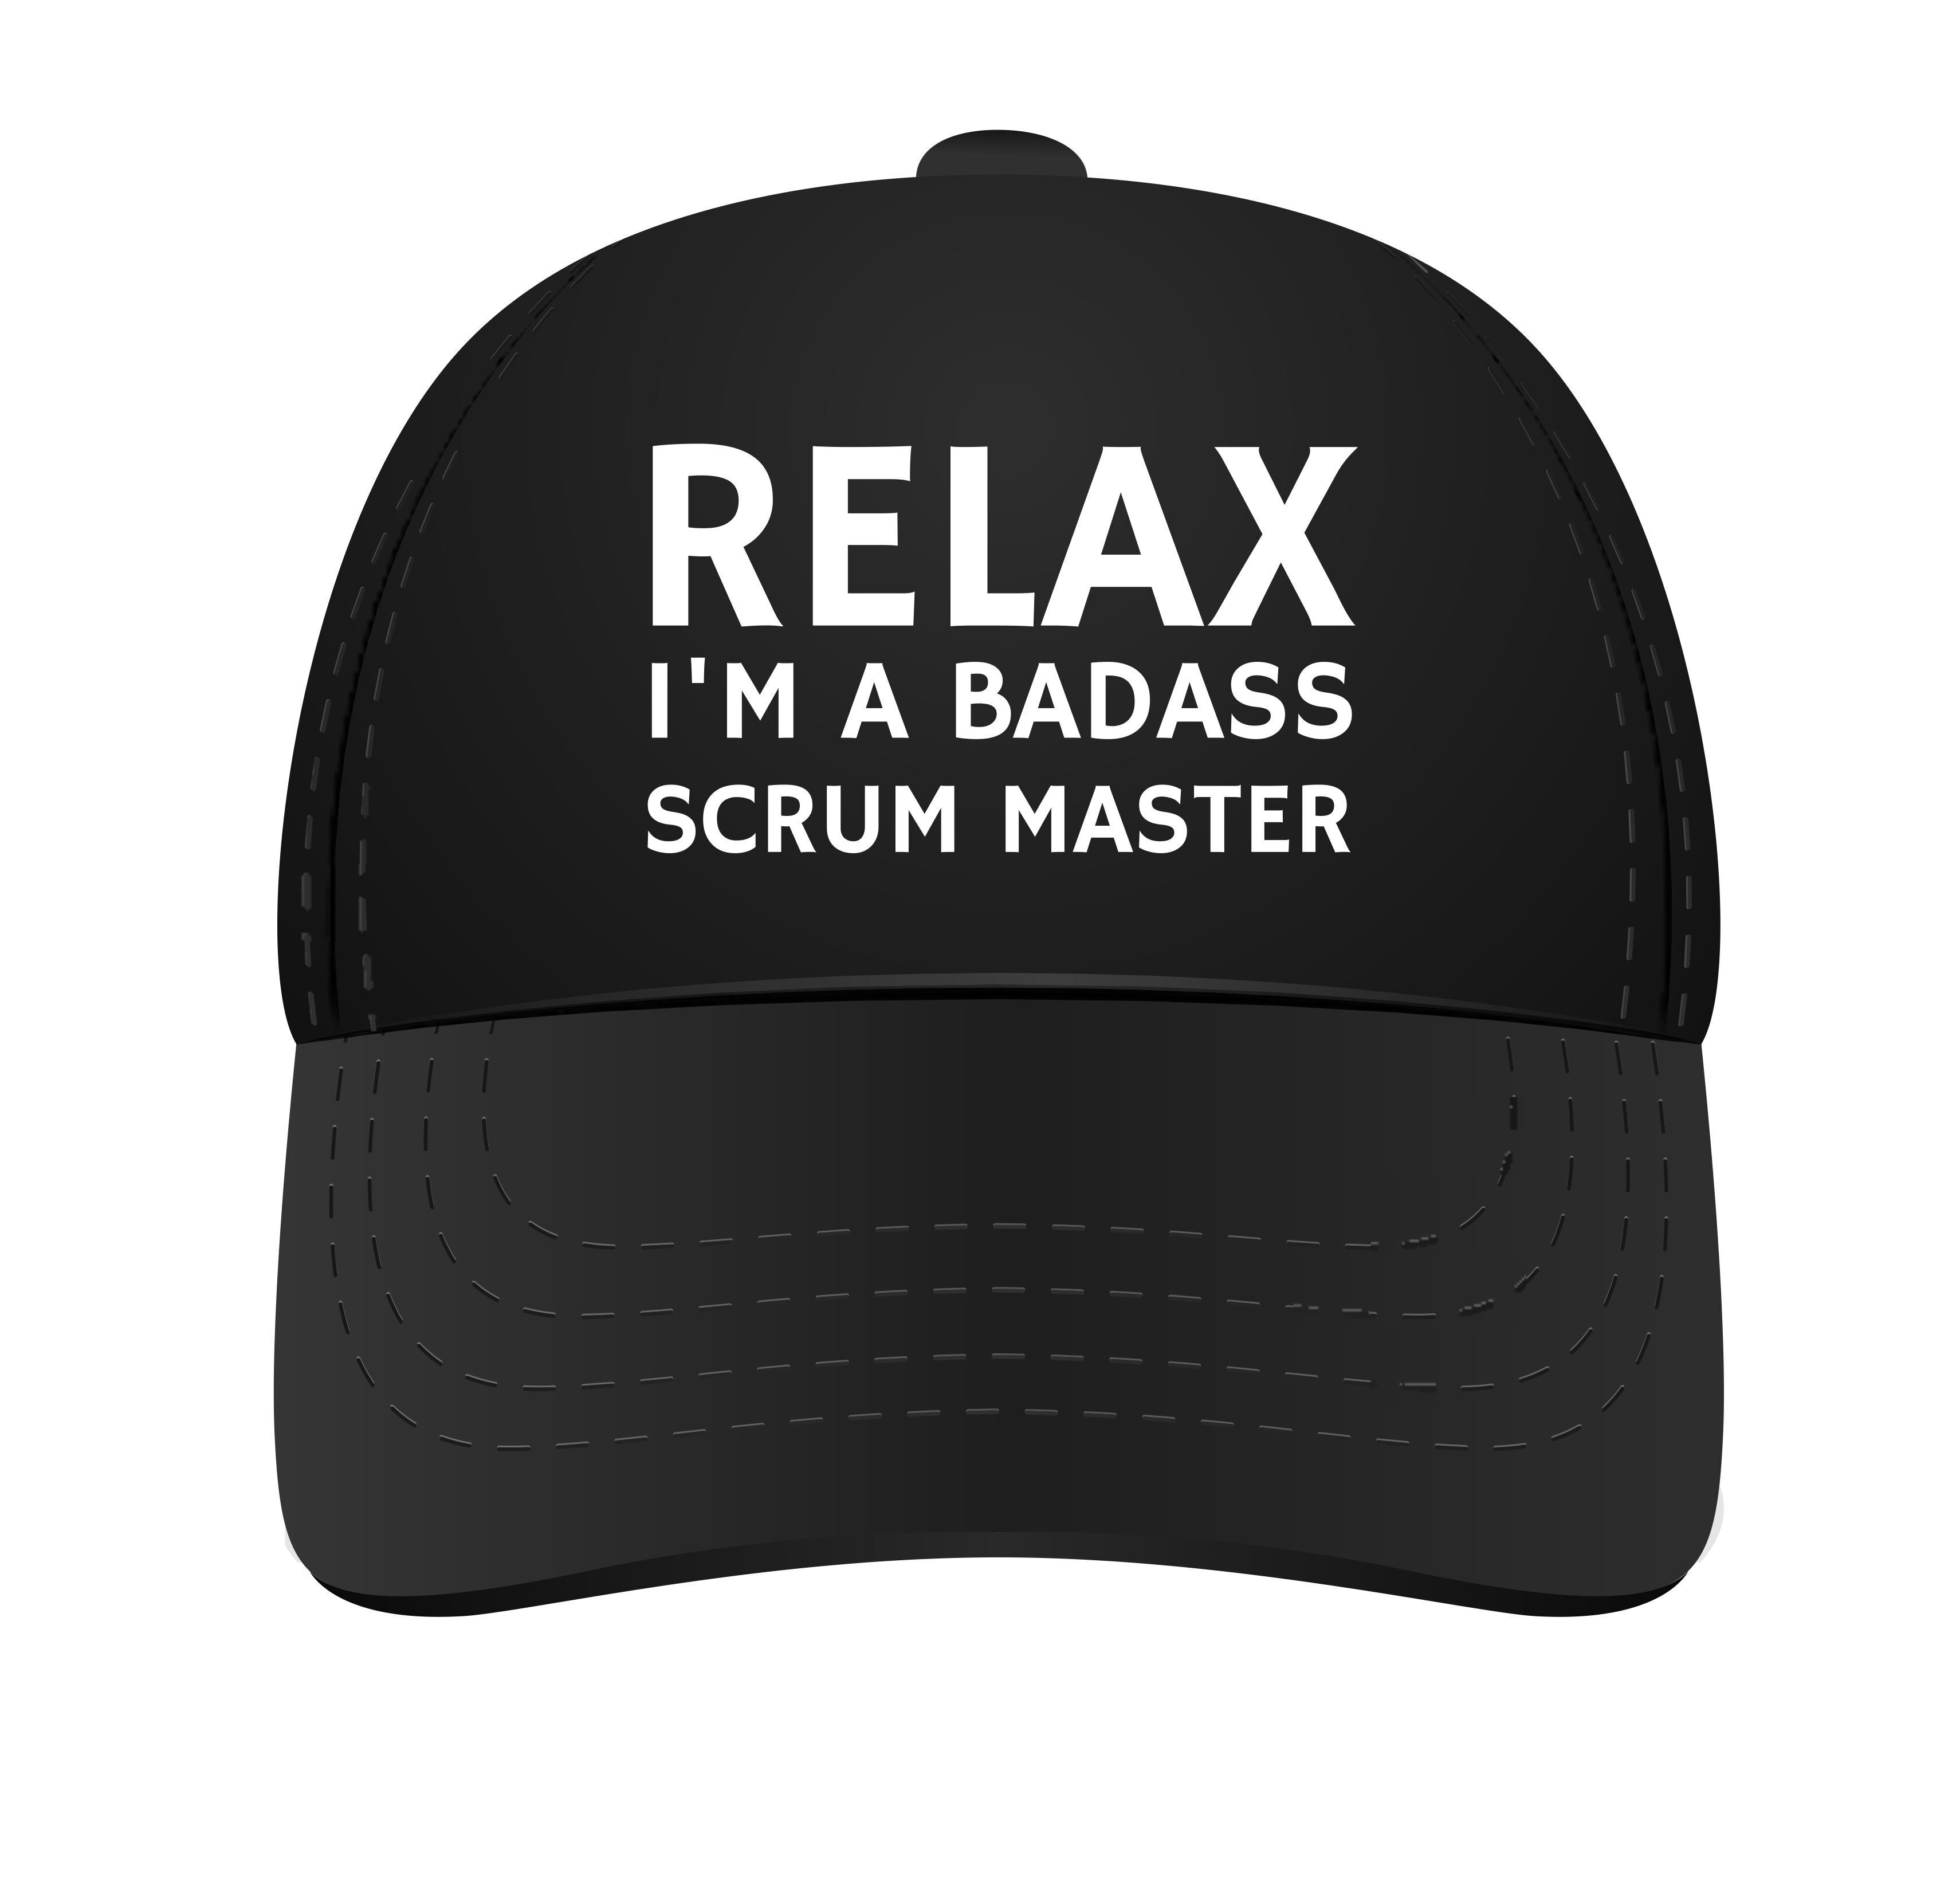 Pet voor scrum master relax i'm a badass scrum master!